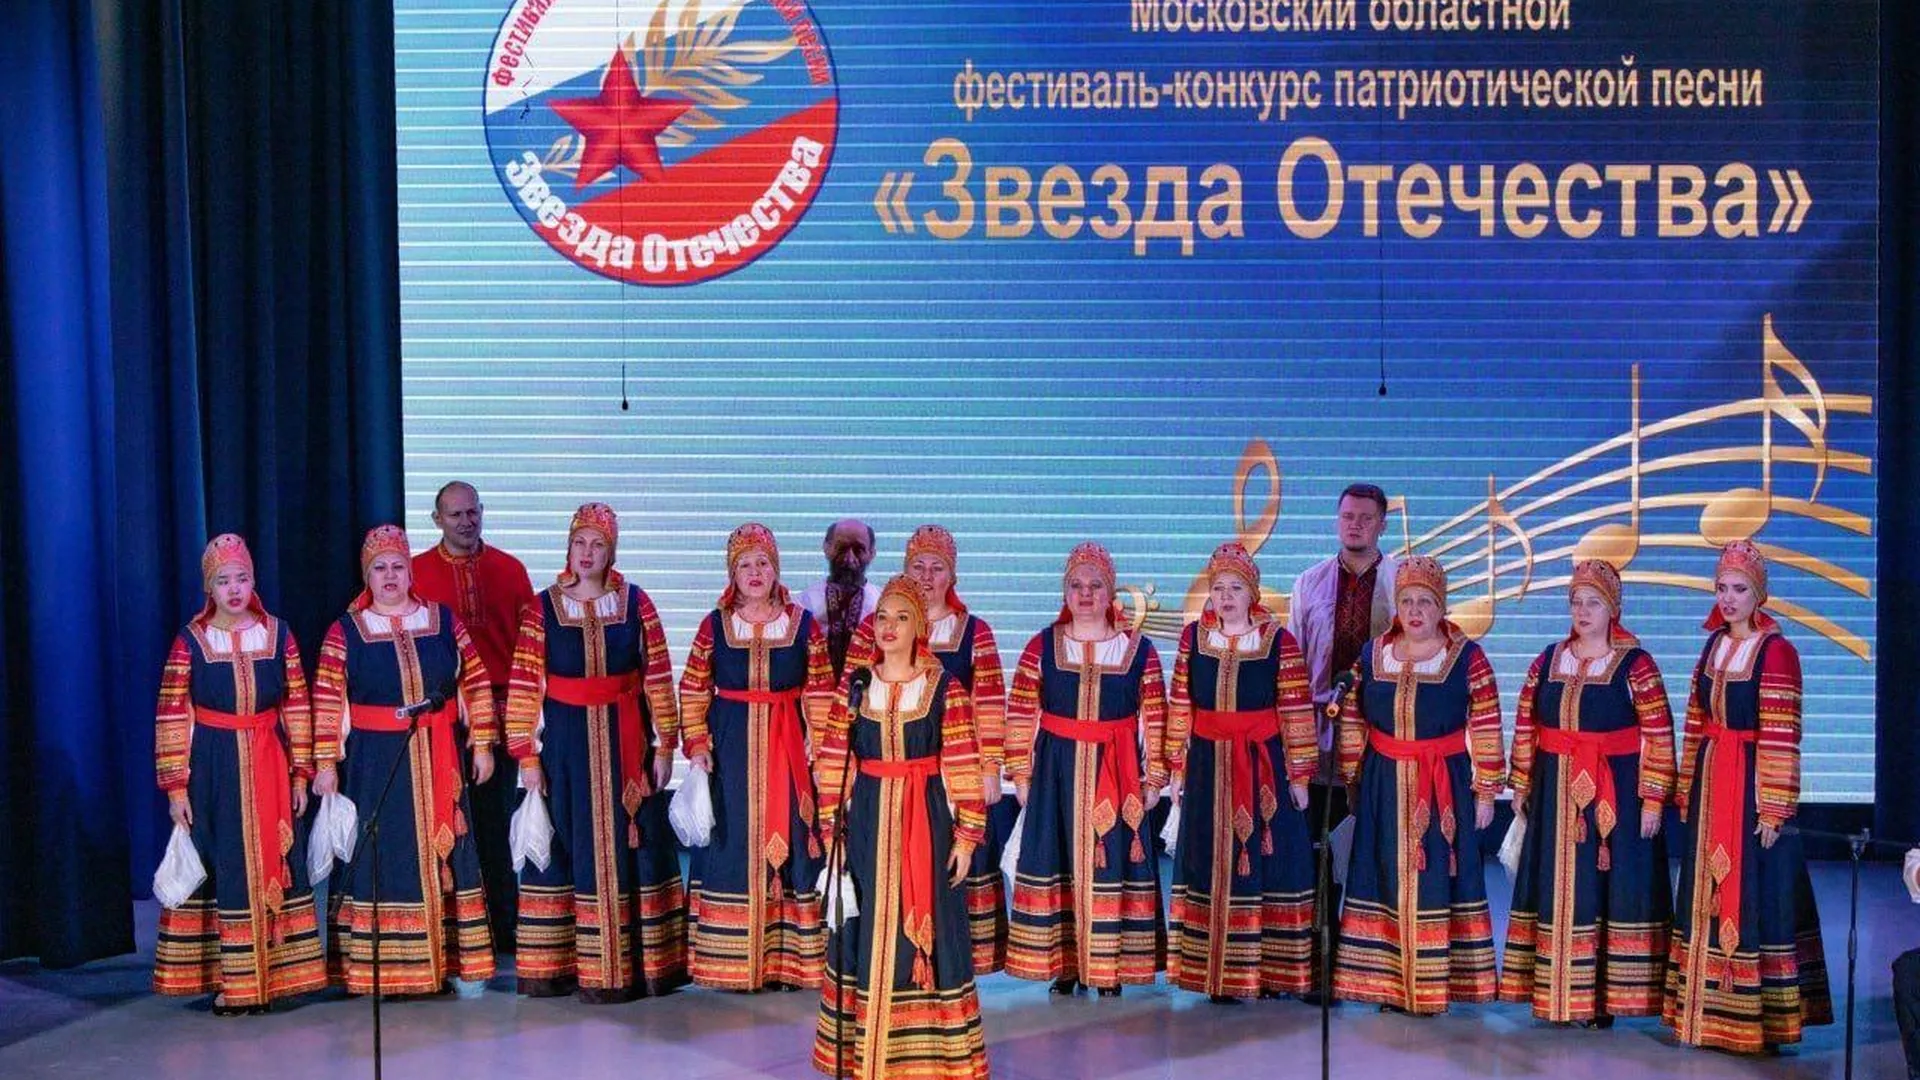 Московский областной фестиваль-конкурс патриотической песни «Звезда Отечества» пройдет в Балашихе